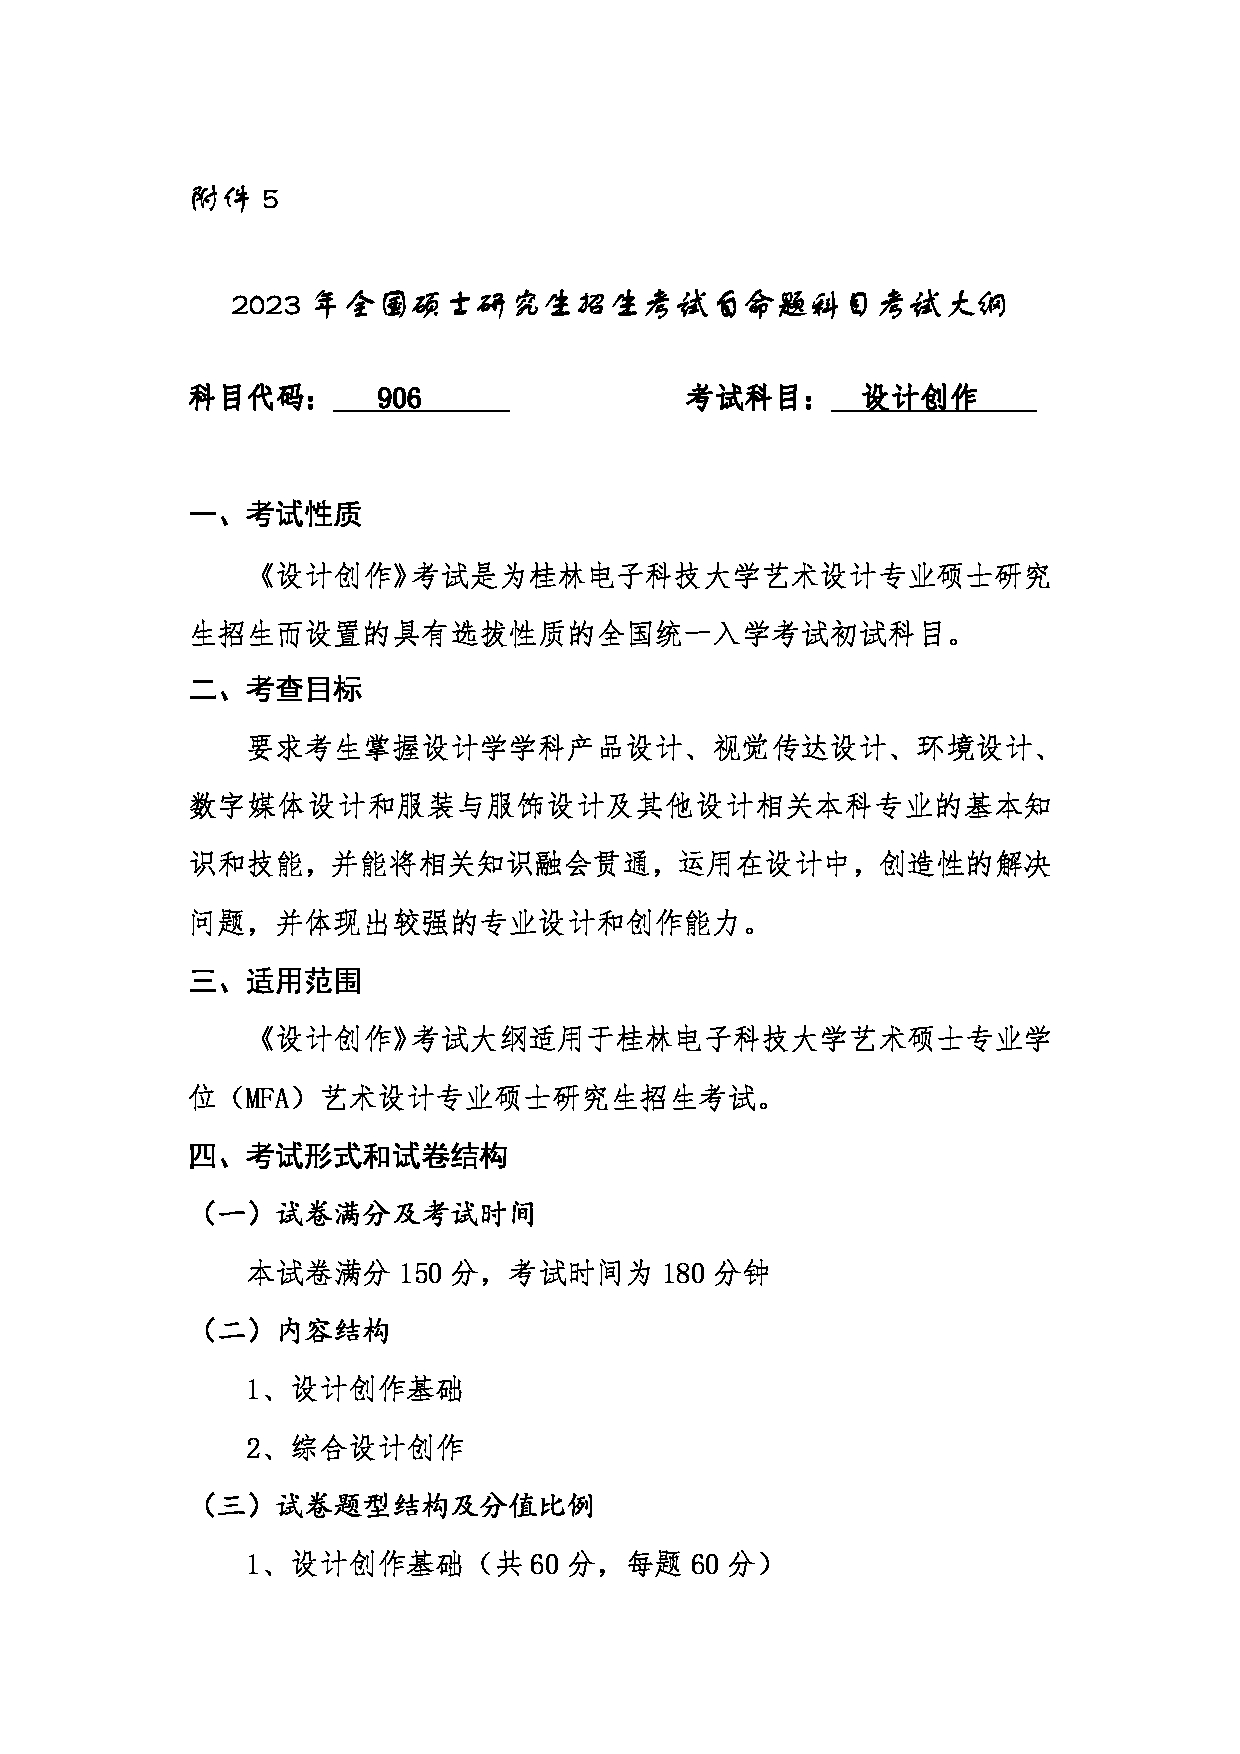 2023考研大纲：桂林电子科技大学2023年考研科目 （906设计创作） 考试大纲第1页